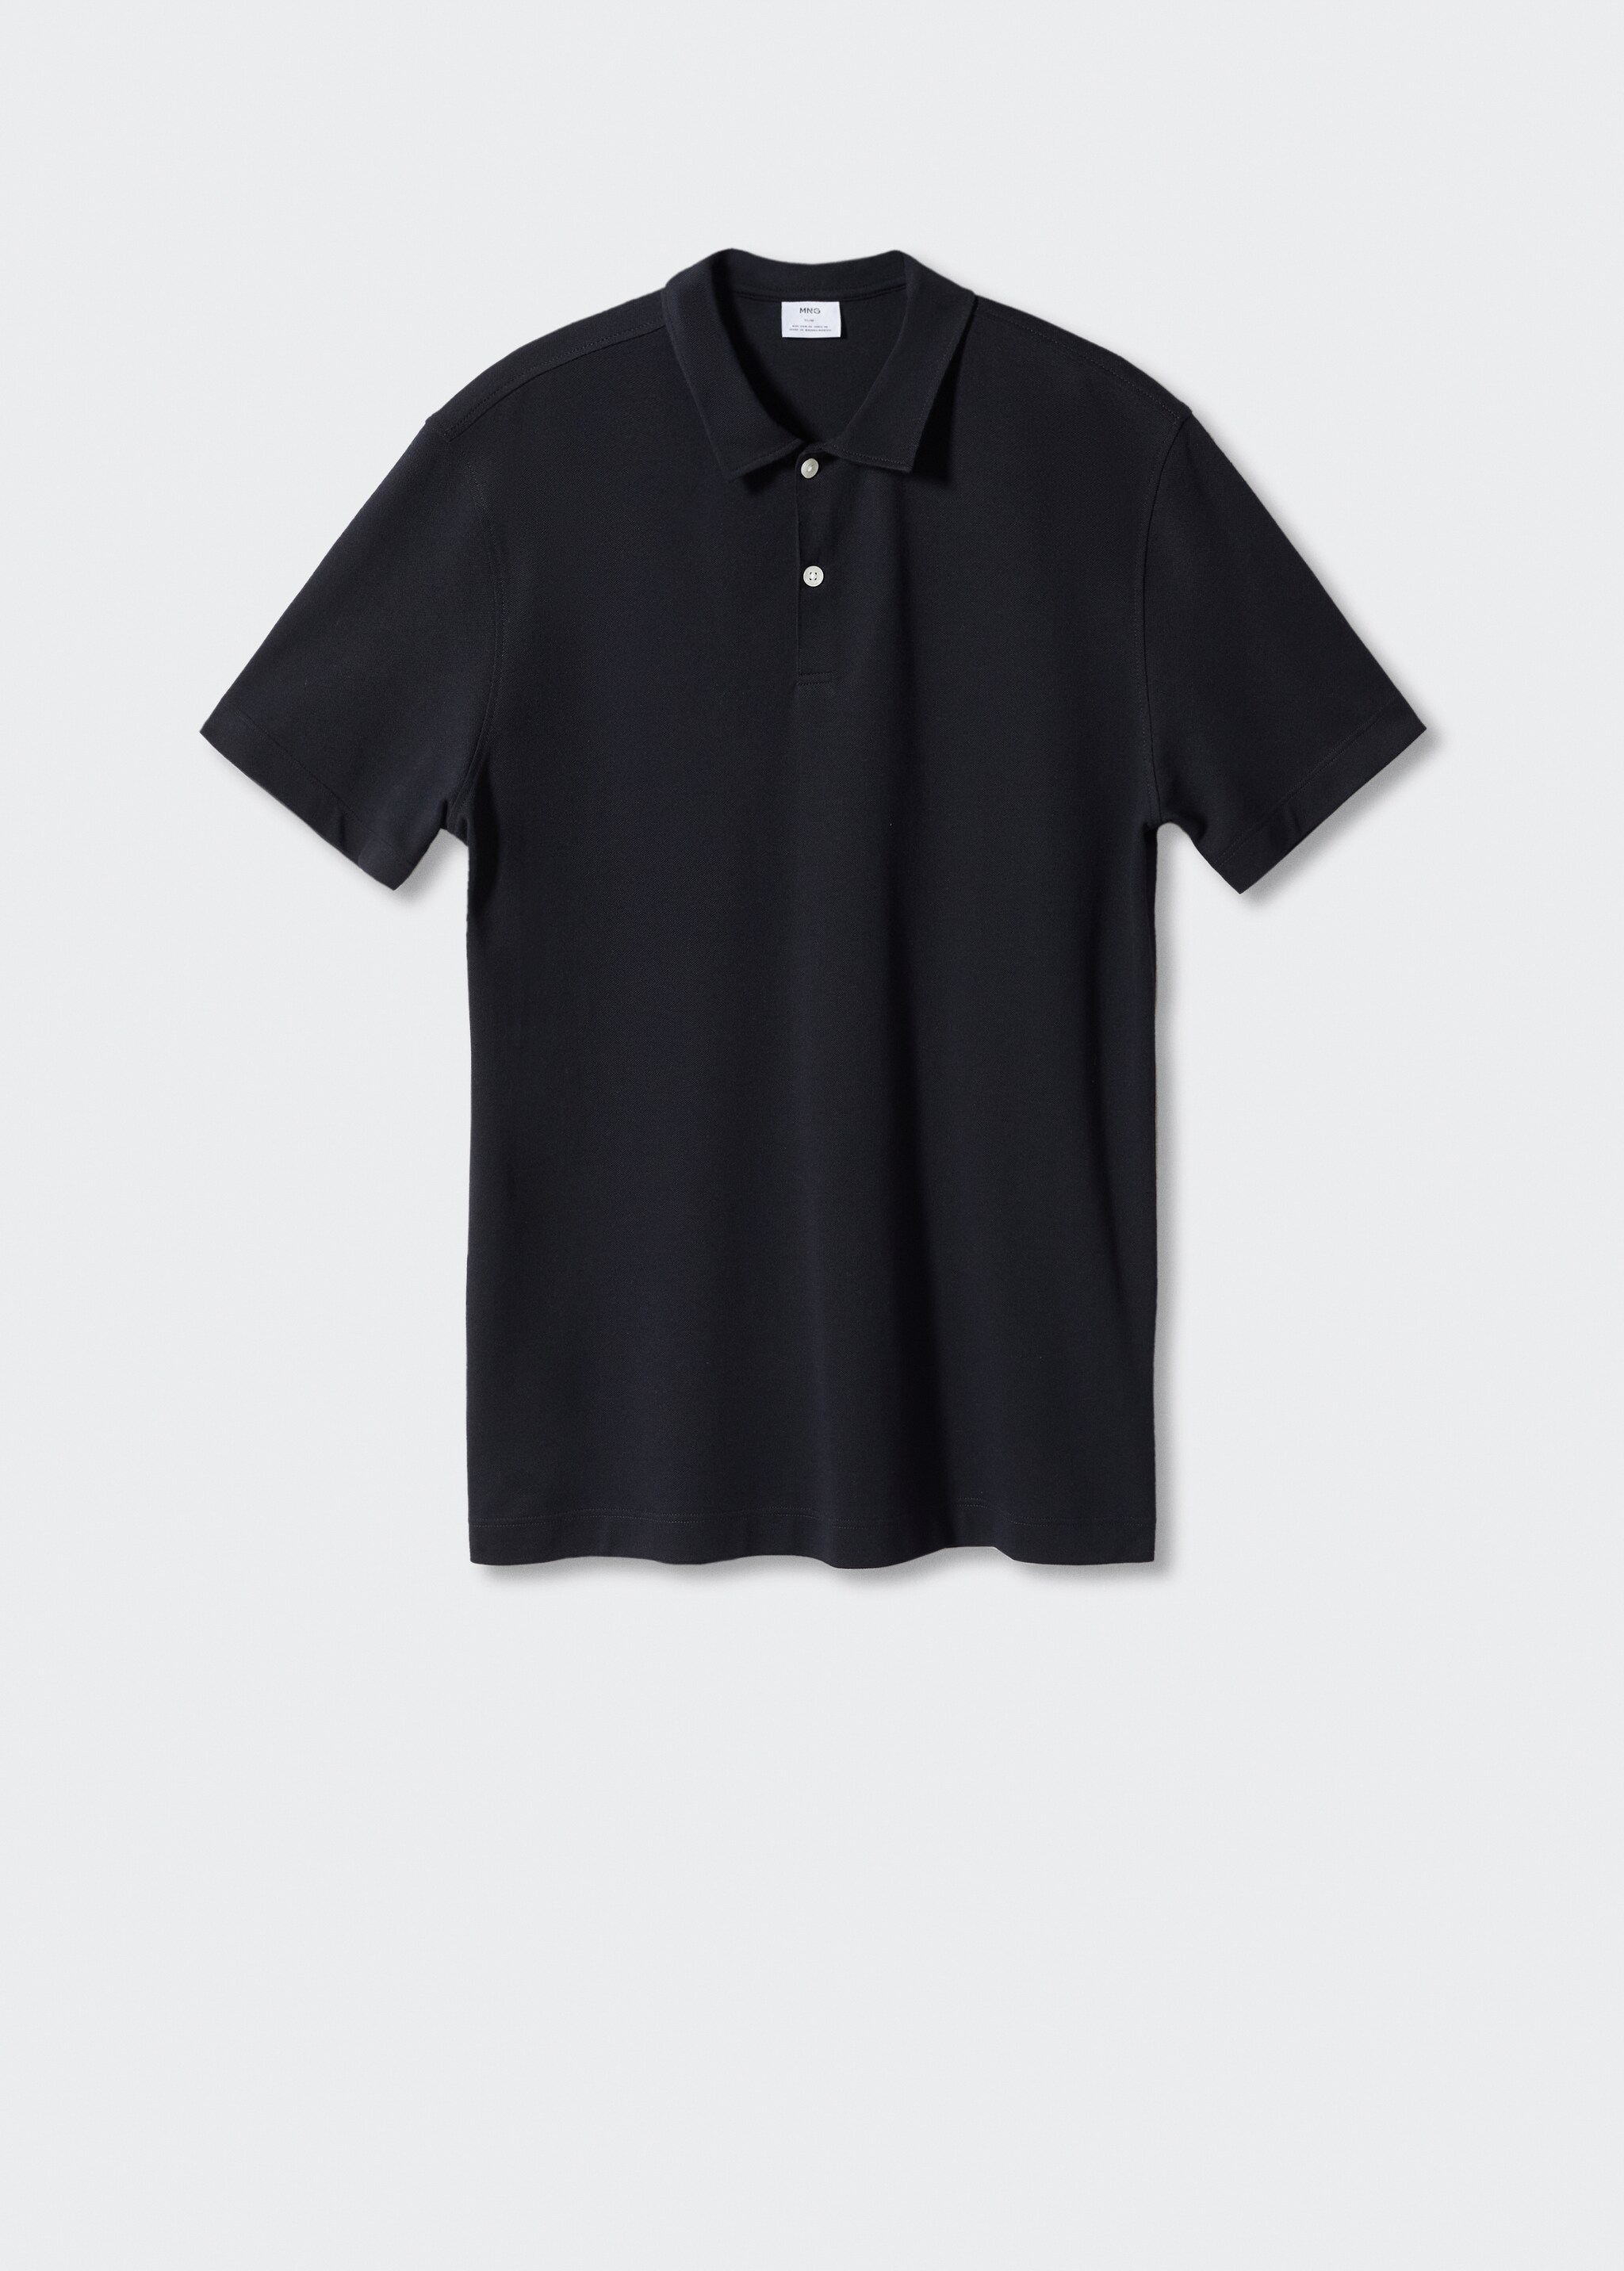 Slim fit cotton piqué texture polo shirt - Article without model